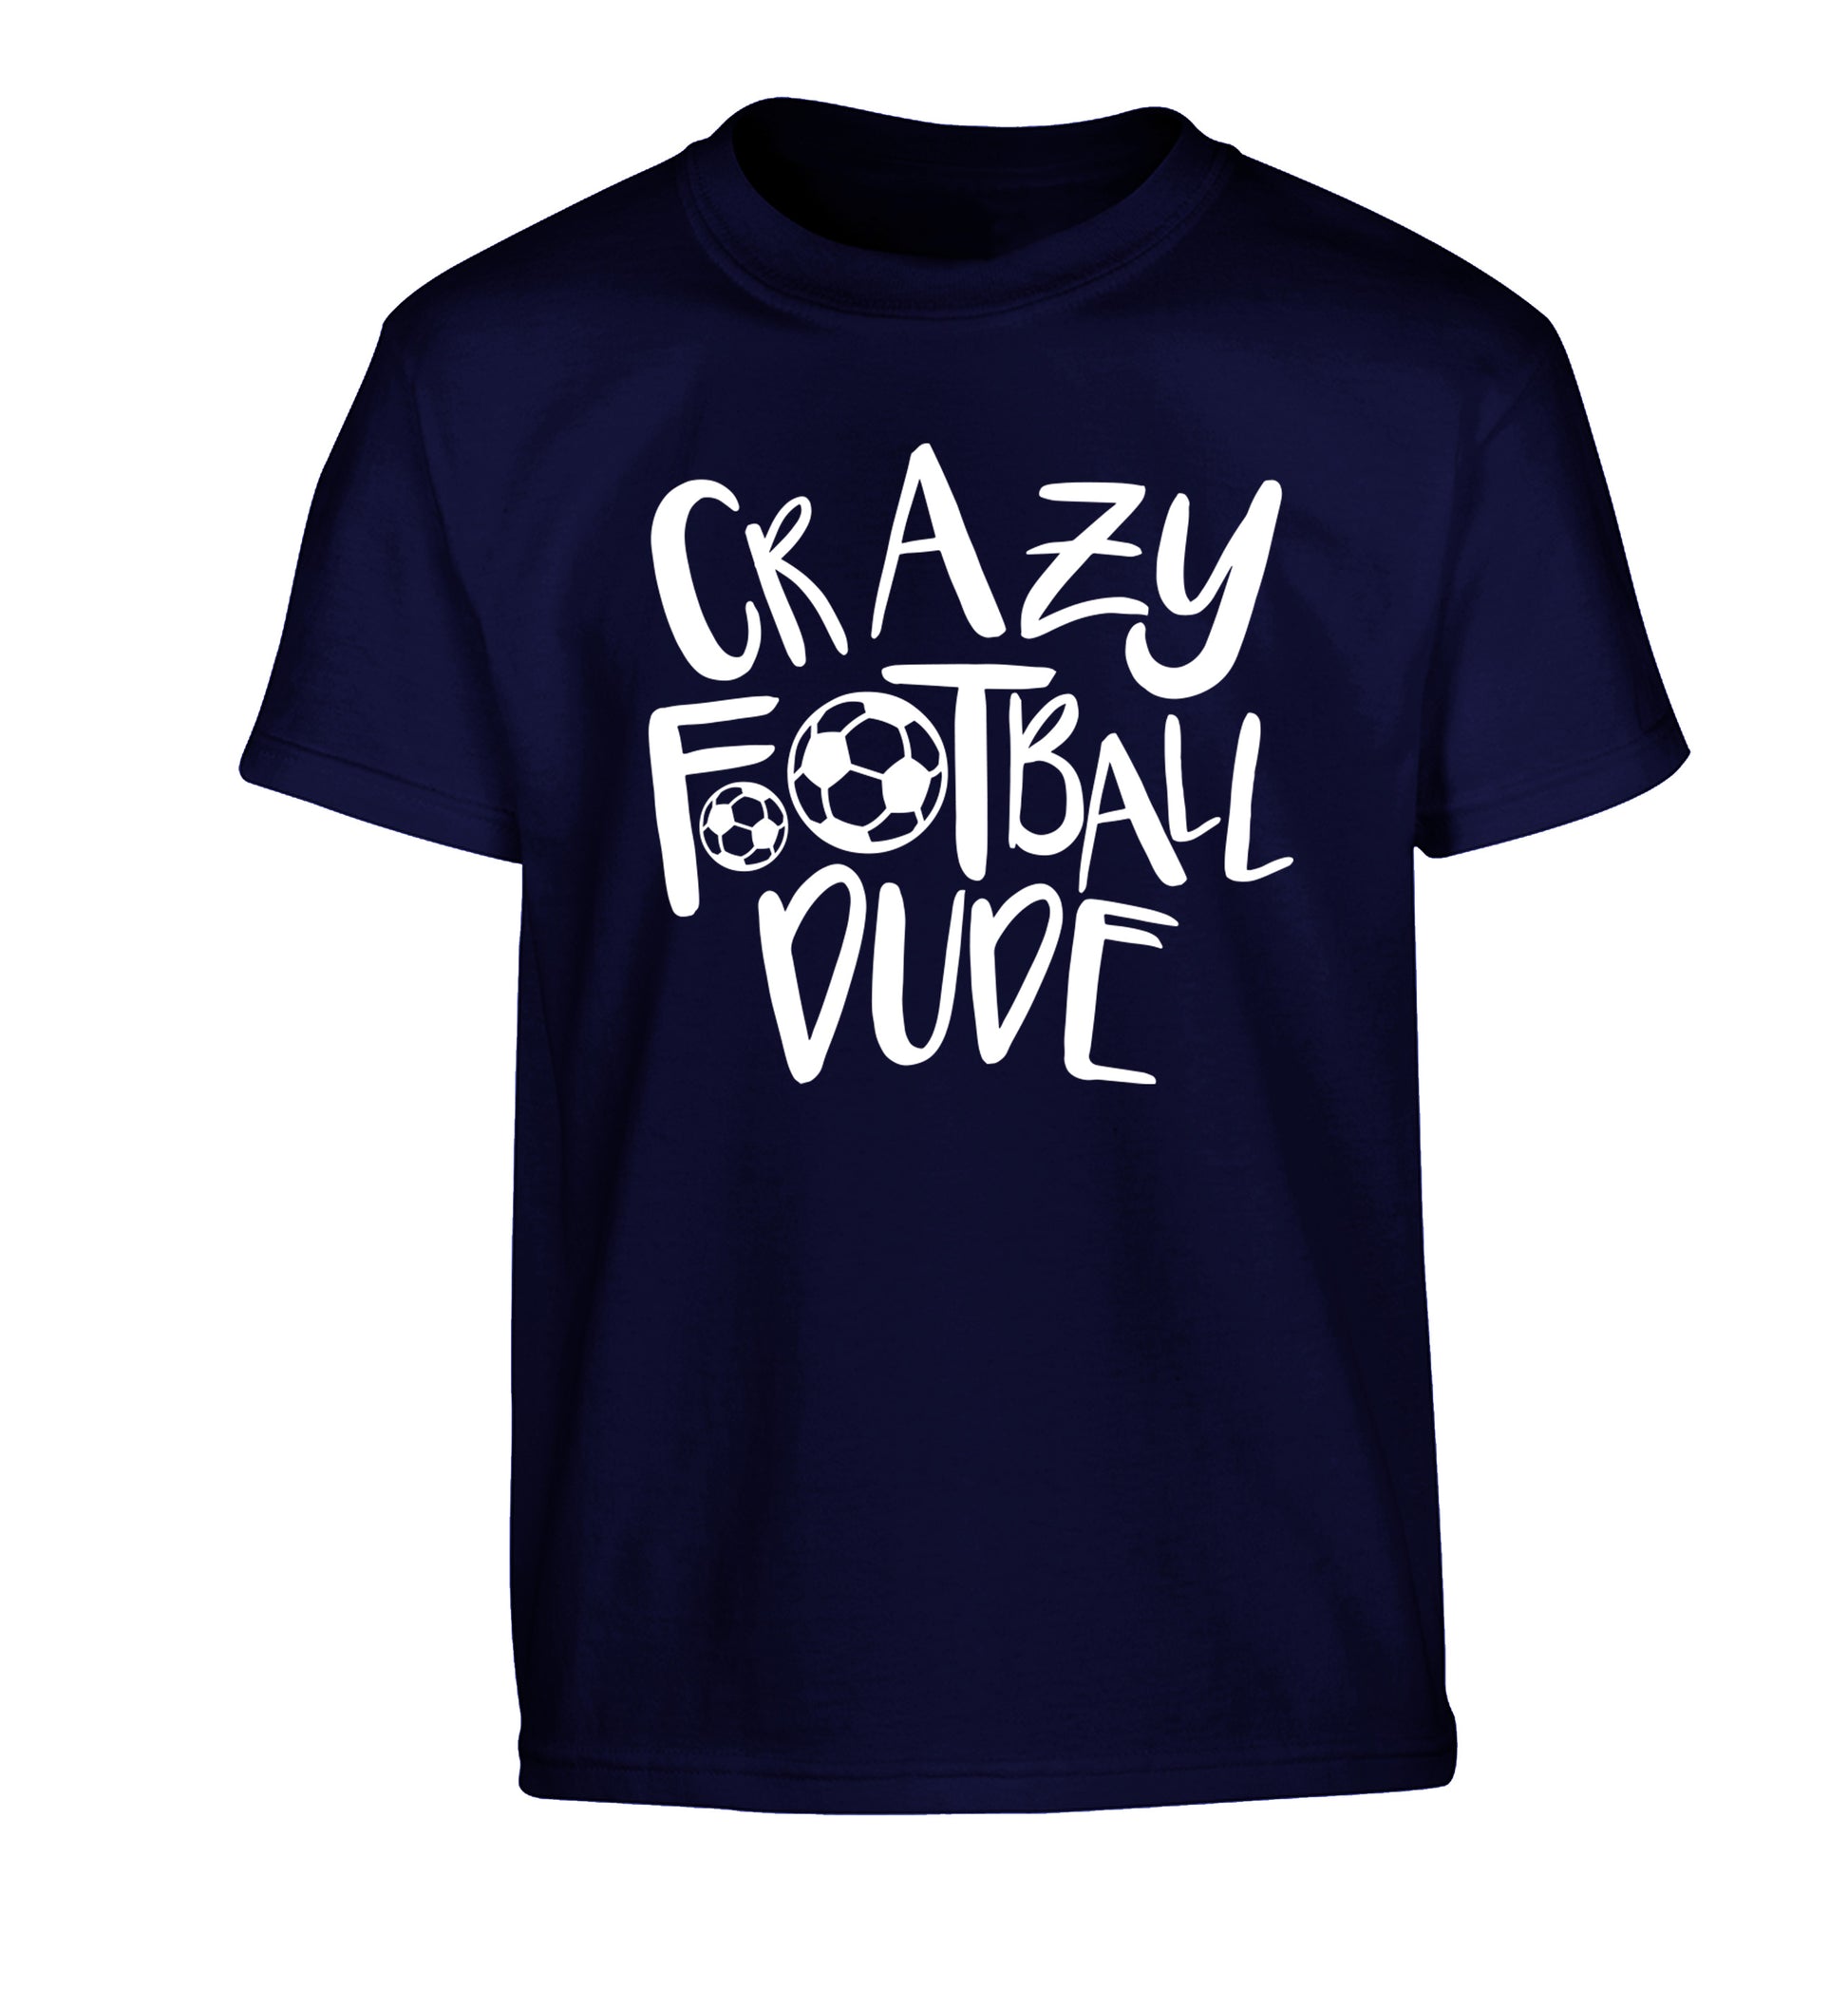 Crazy football dude Children's navy Tshirt 12-14 Years